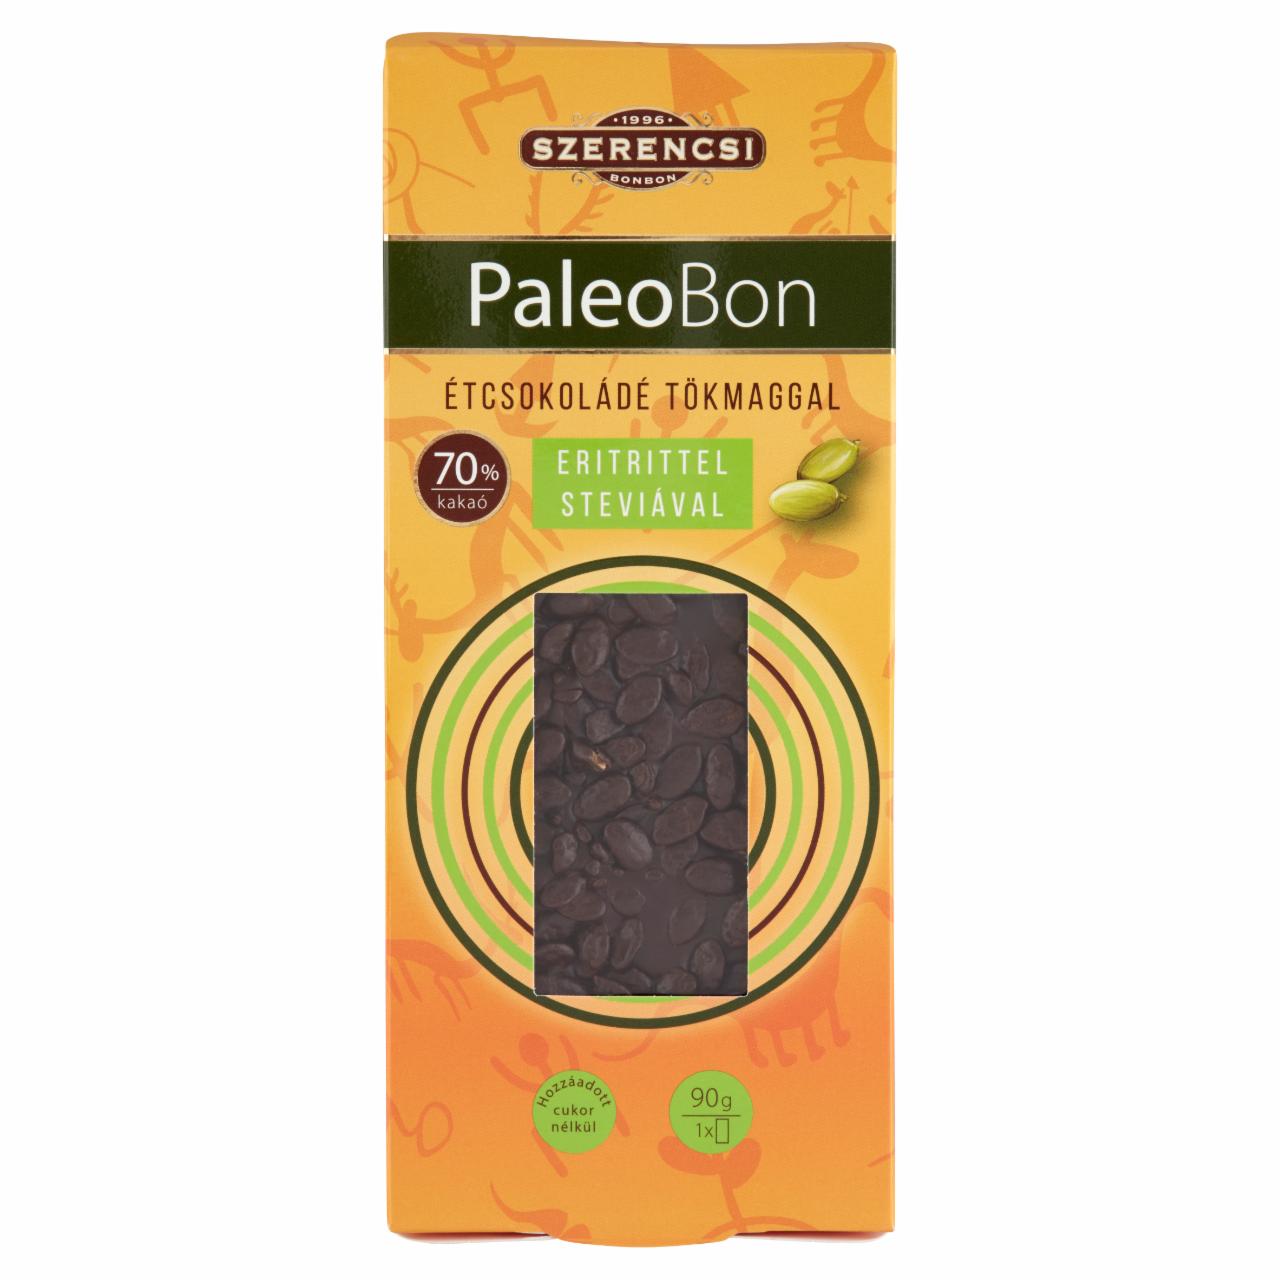 Képek - Szerencsi PaleoBon étcsokoládé tökmaggal, eritrittel, steviával 90 g